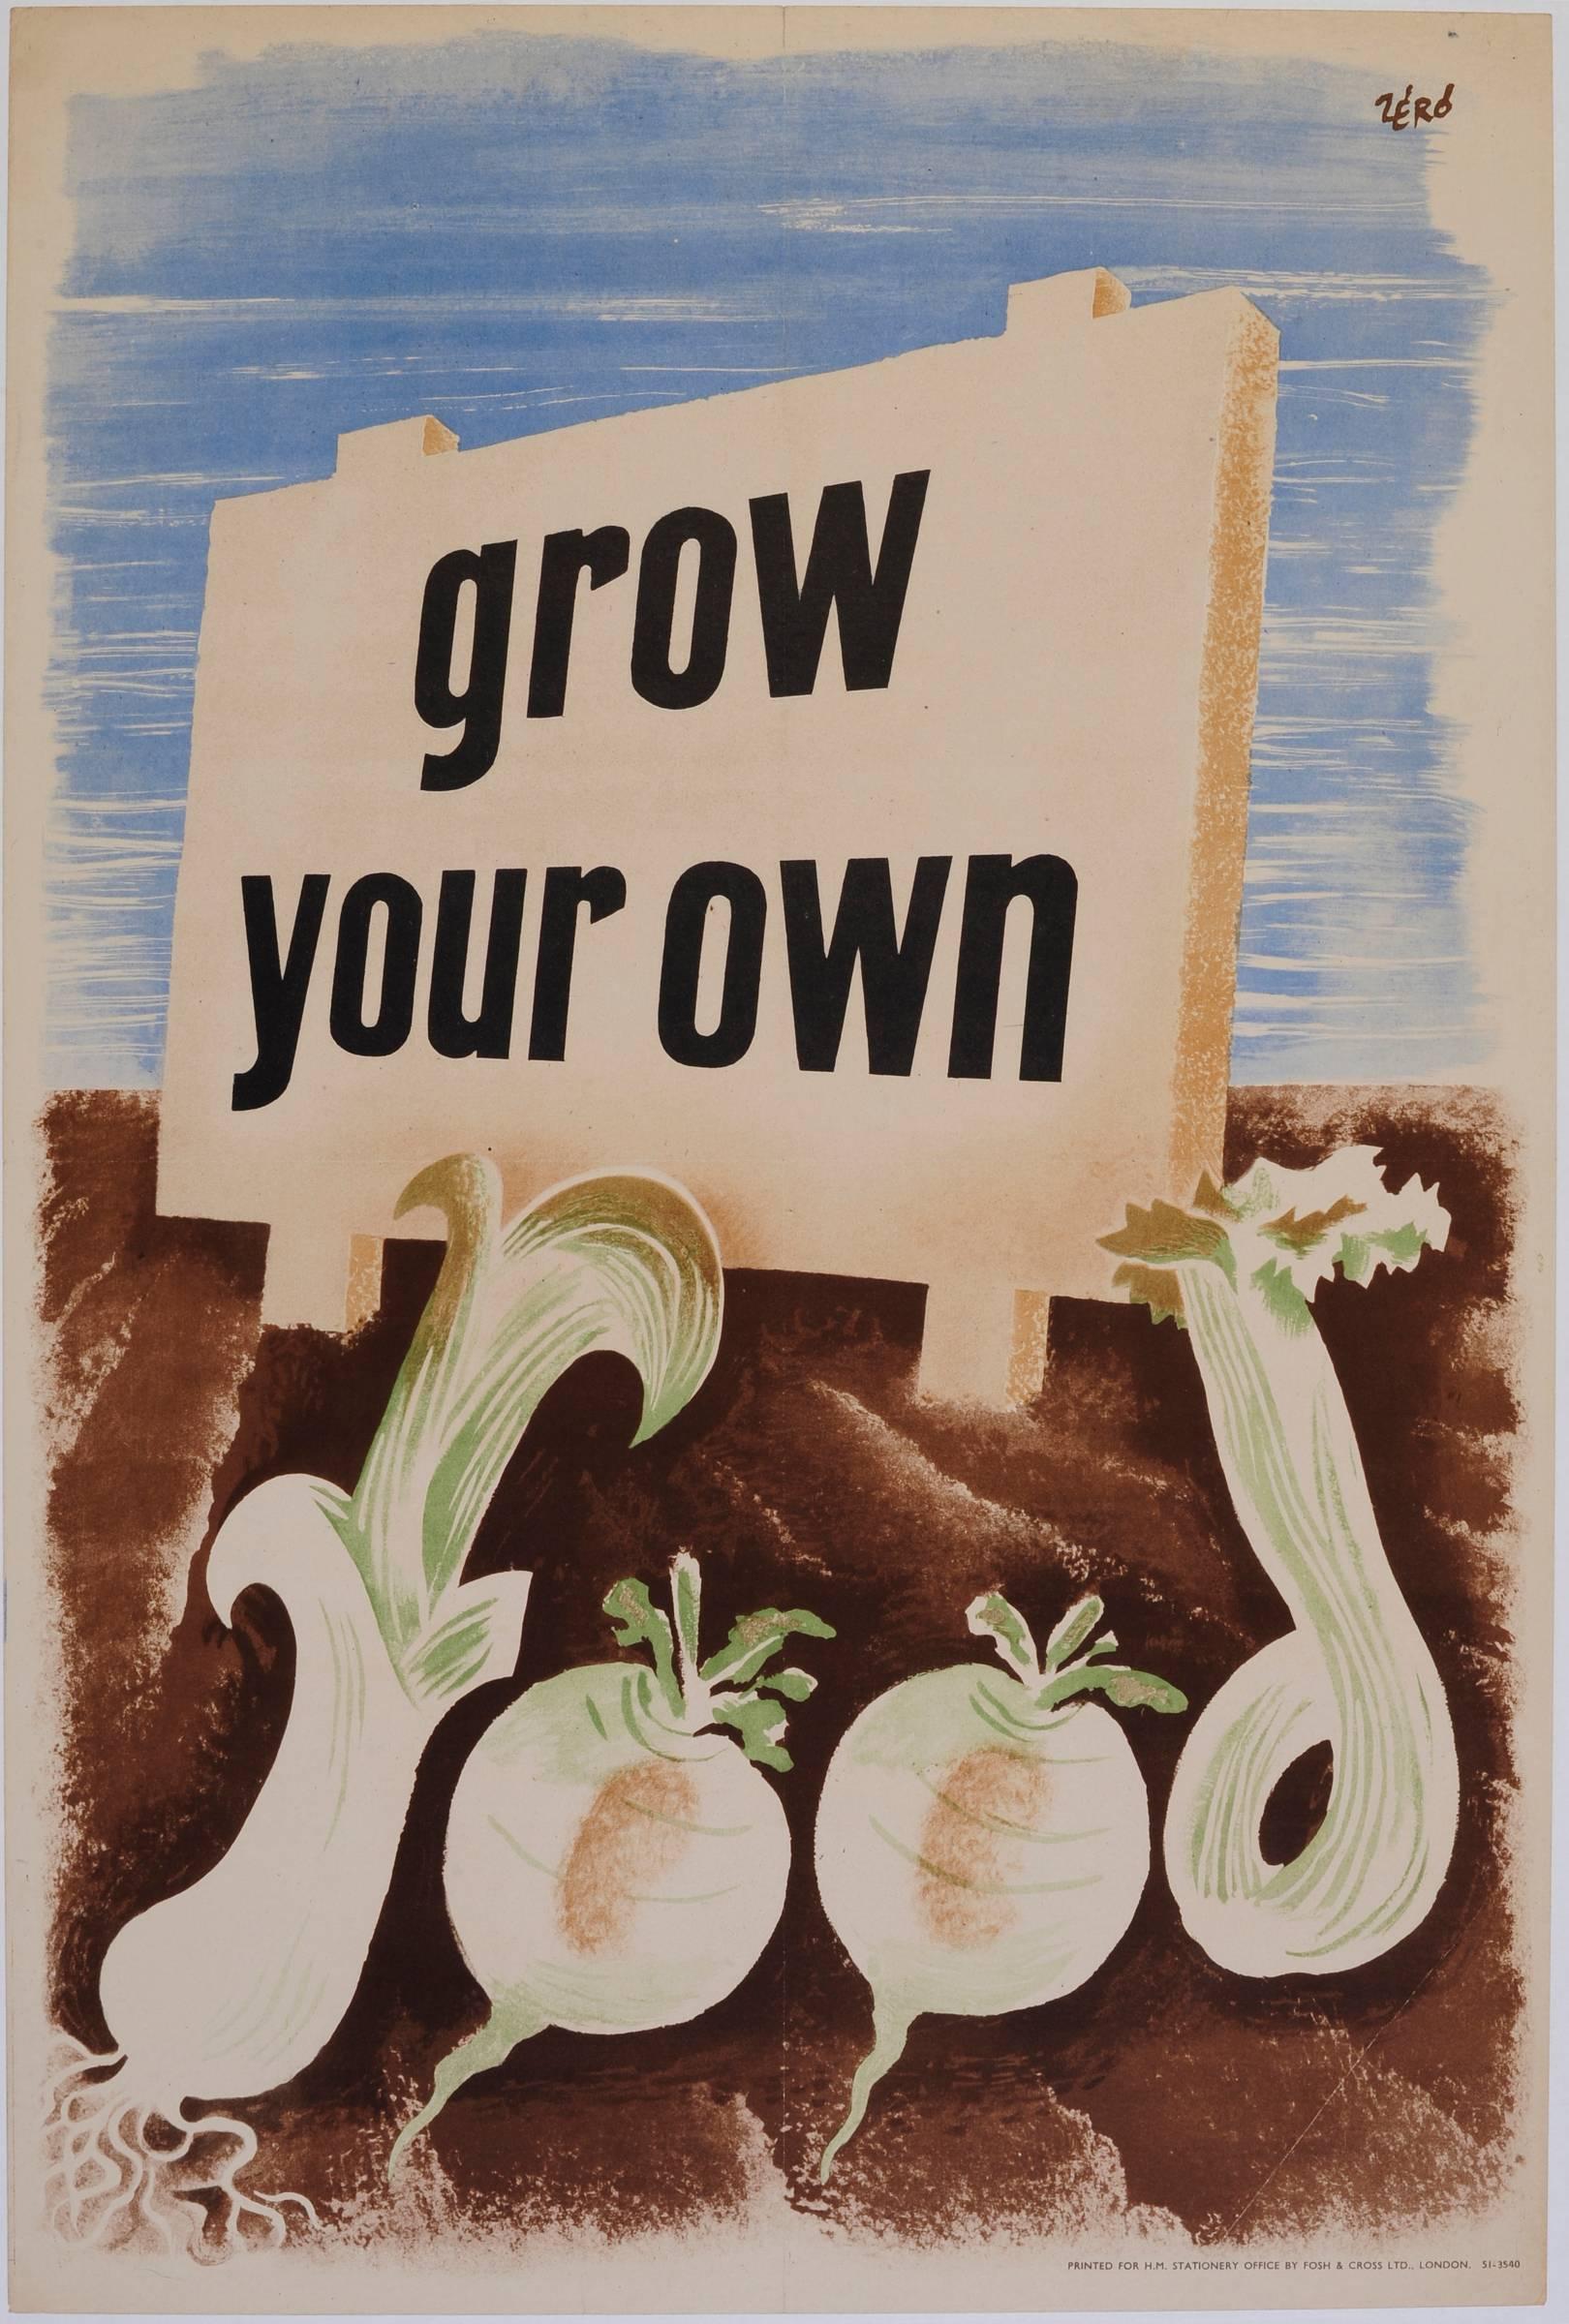 Hans Schleger Zero Print - 'Zero' Hans Schleger Grow Your Own Food Surreal Original Vintage Poster